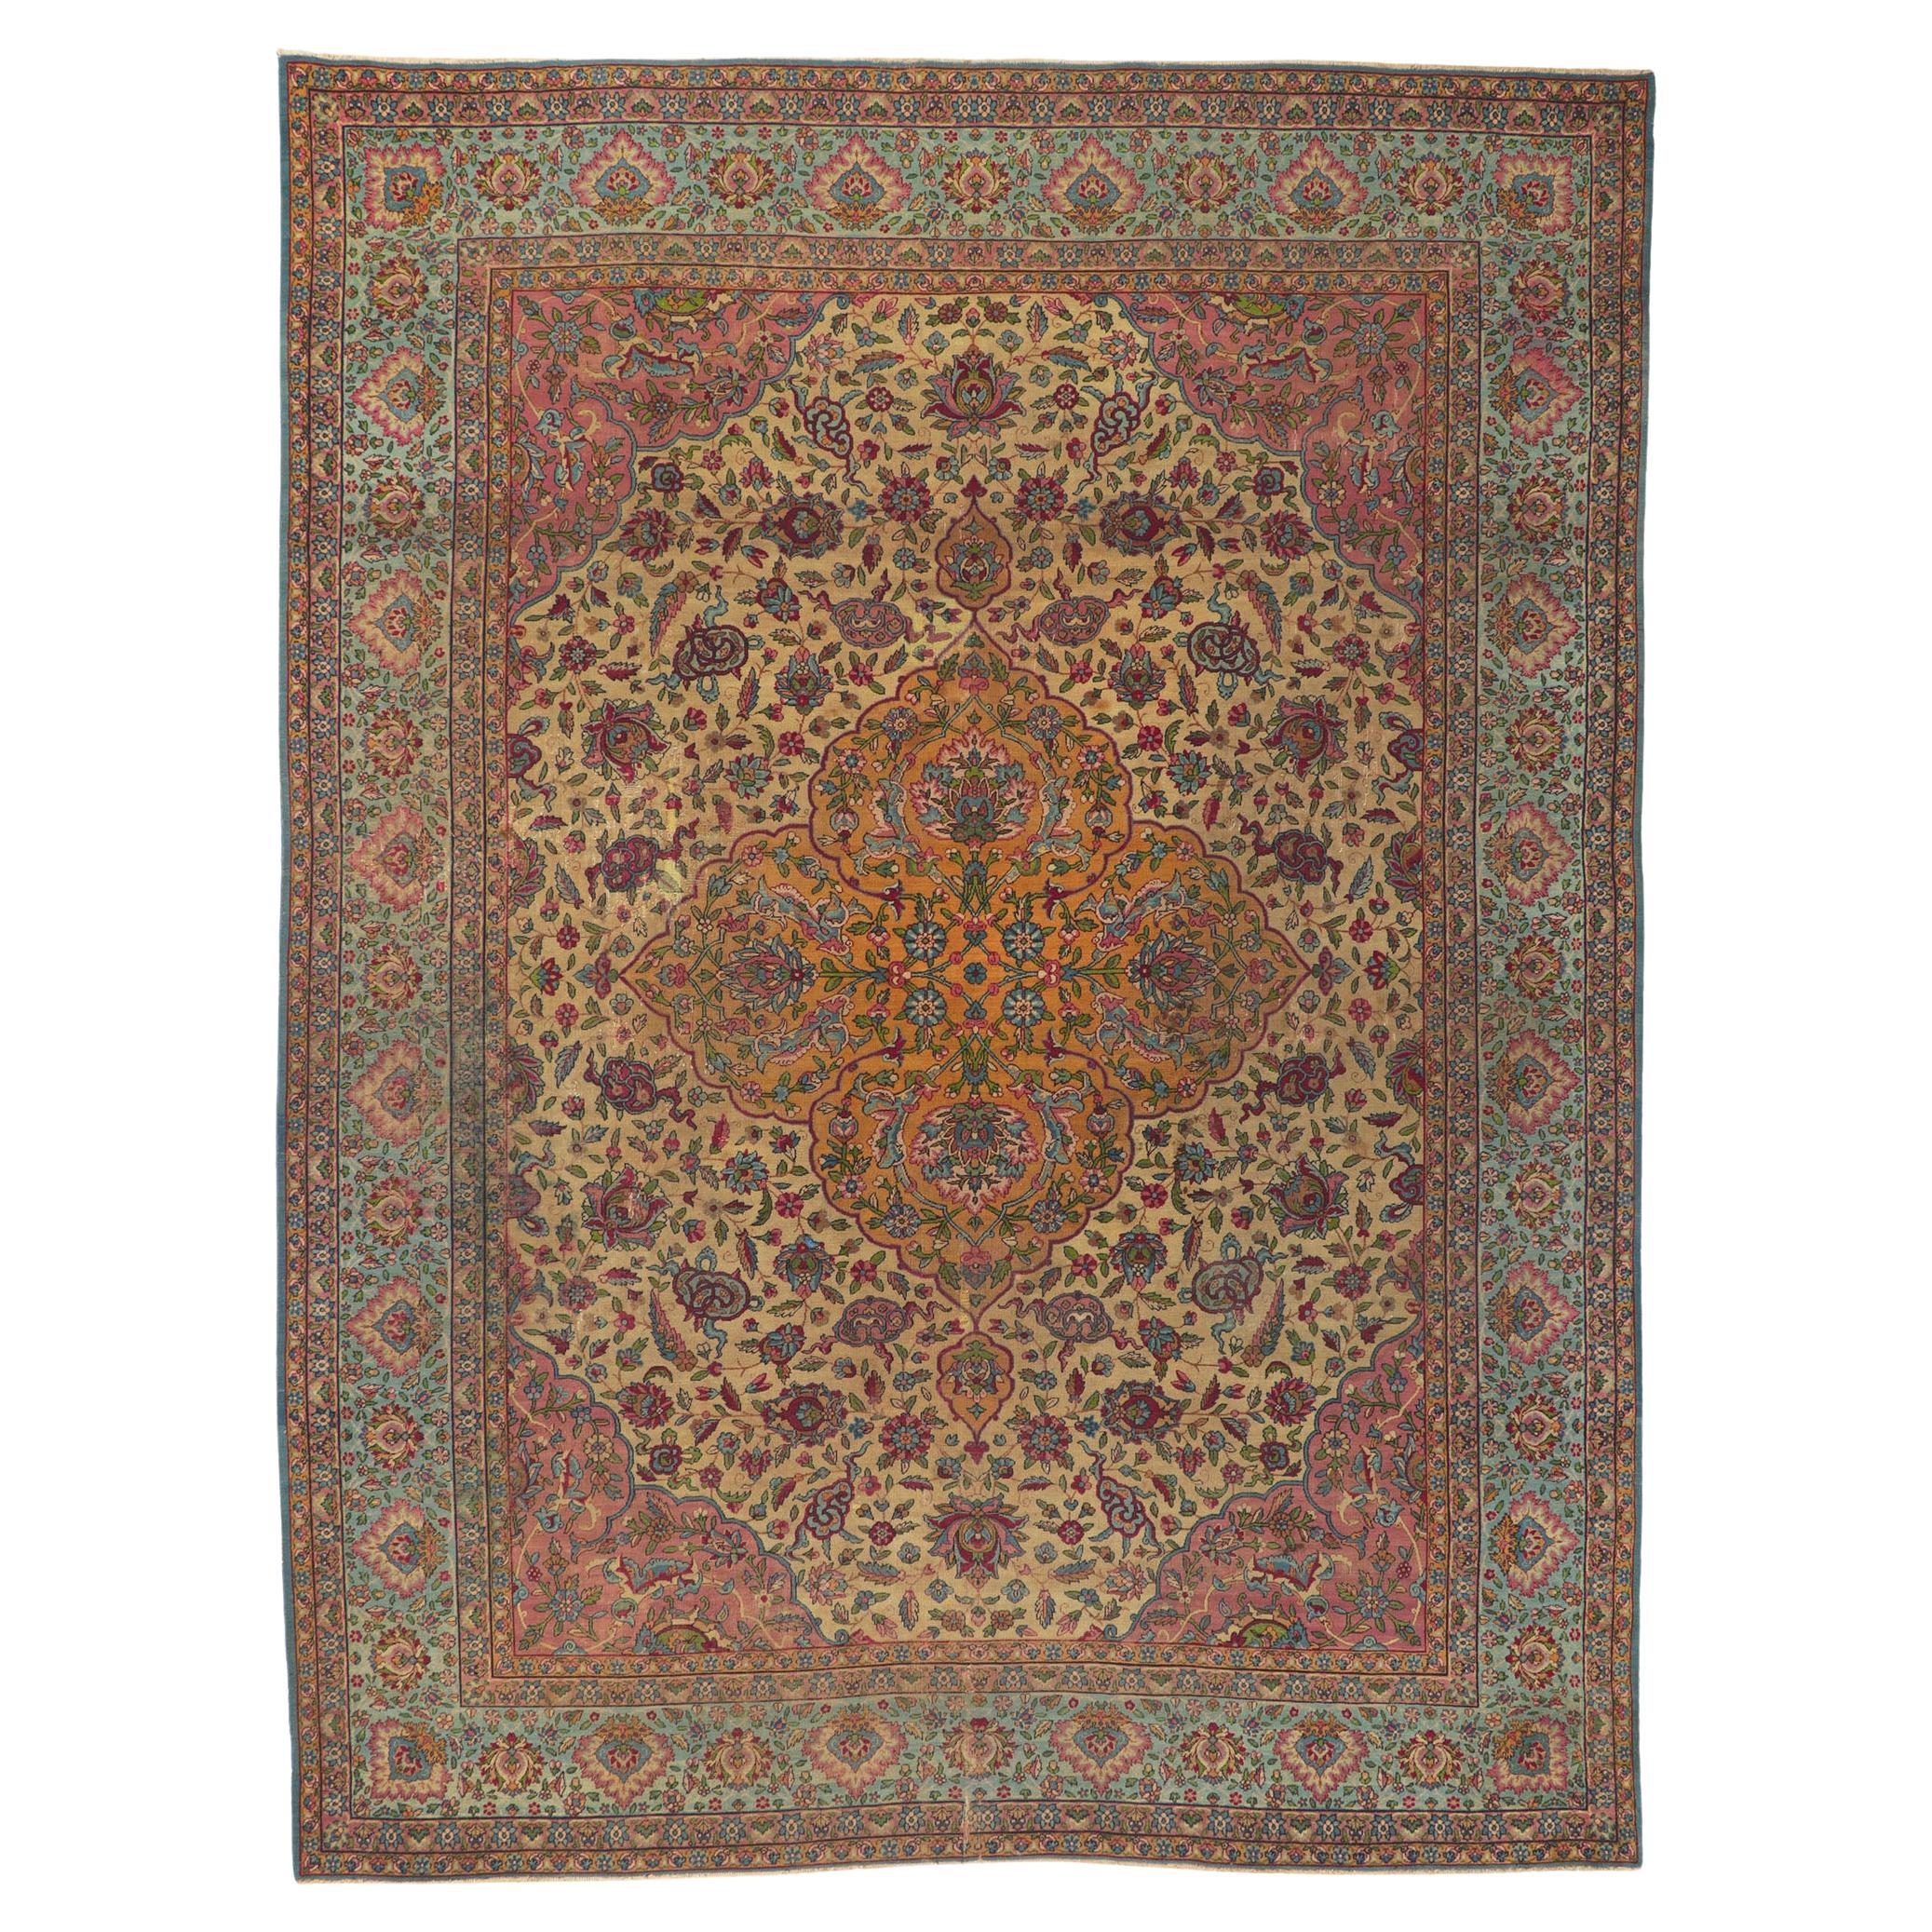 Antique-Worn Persian Kerman Rug, Bridgerton Style Meets Rococo Elegance